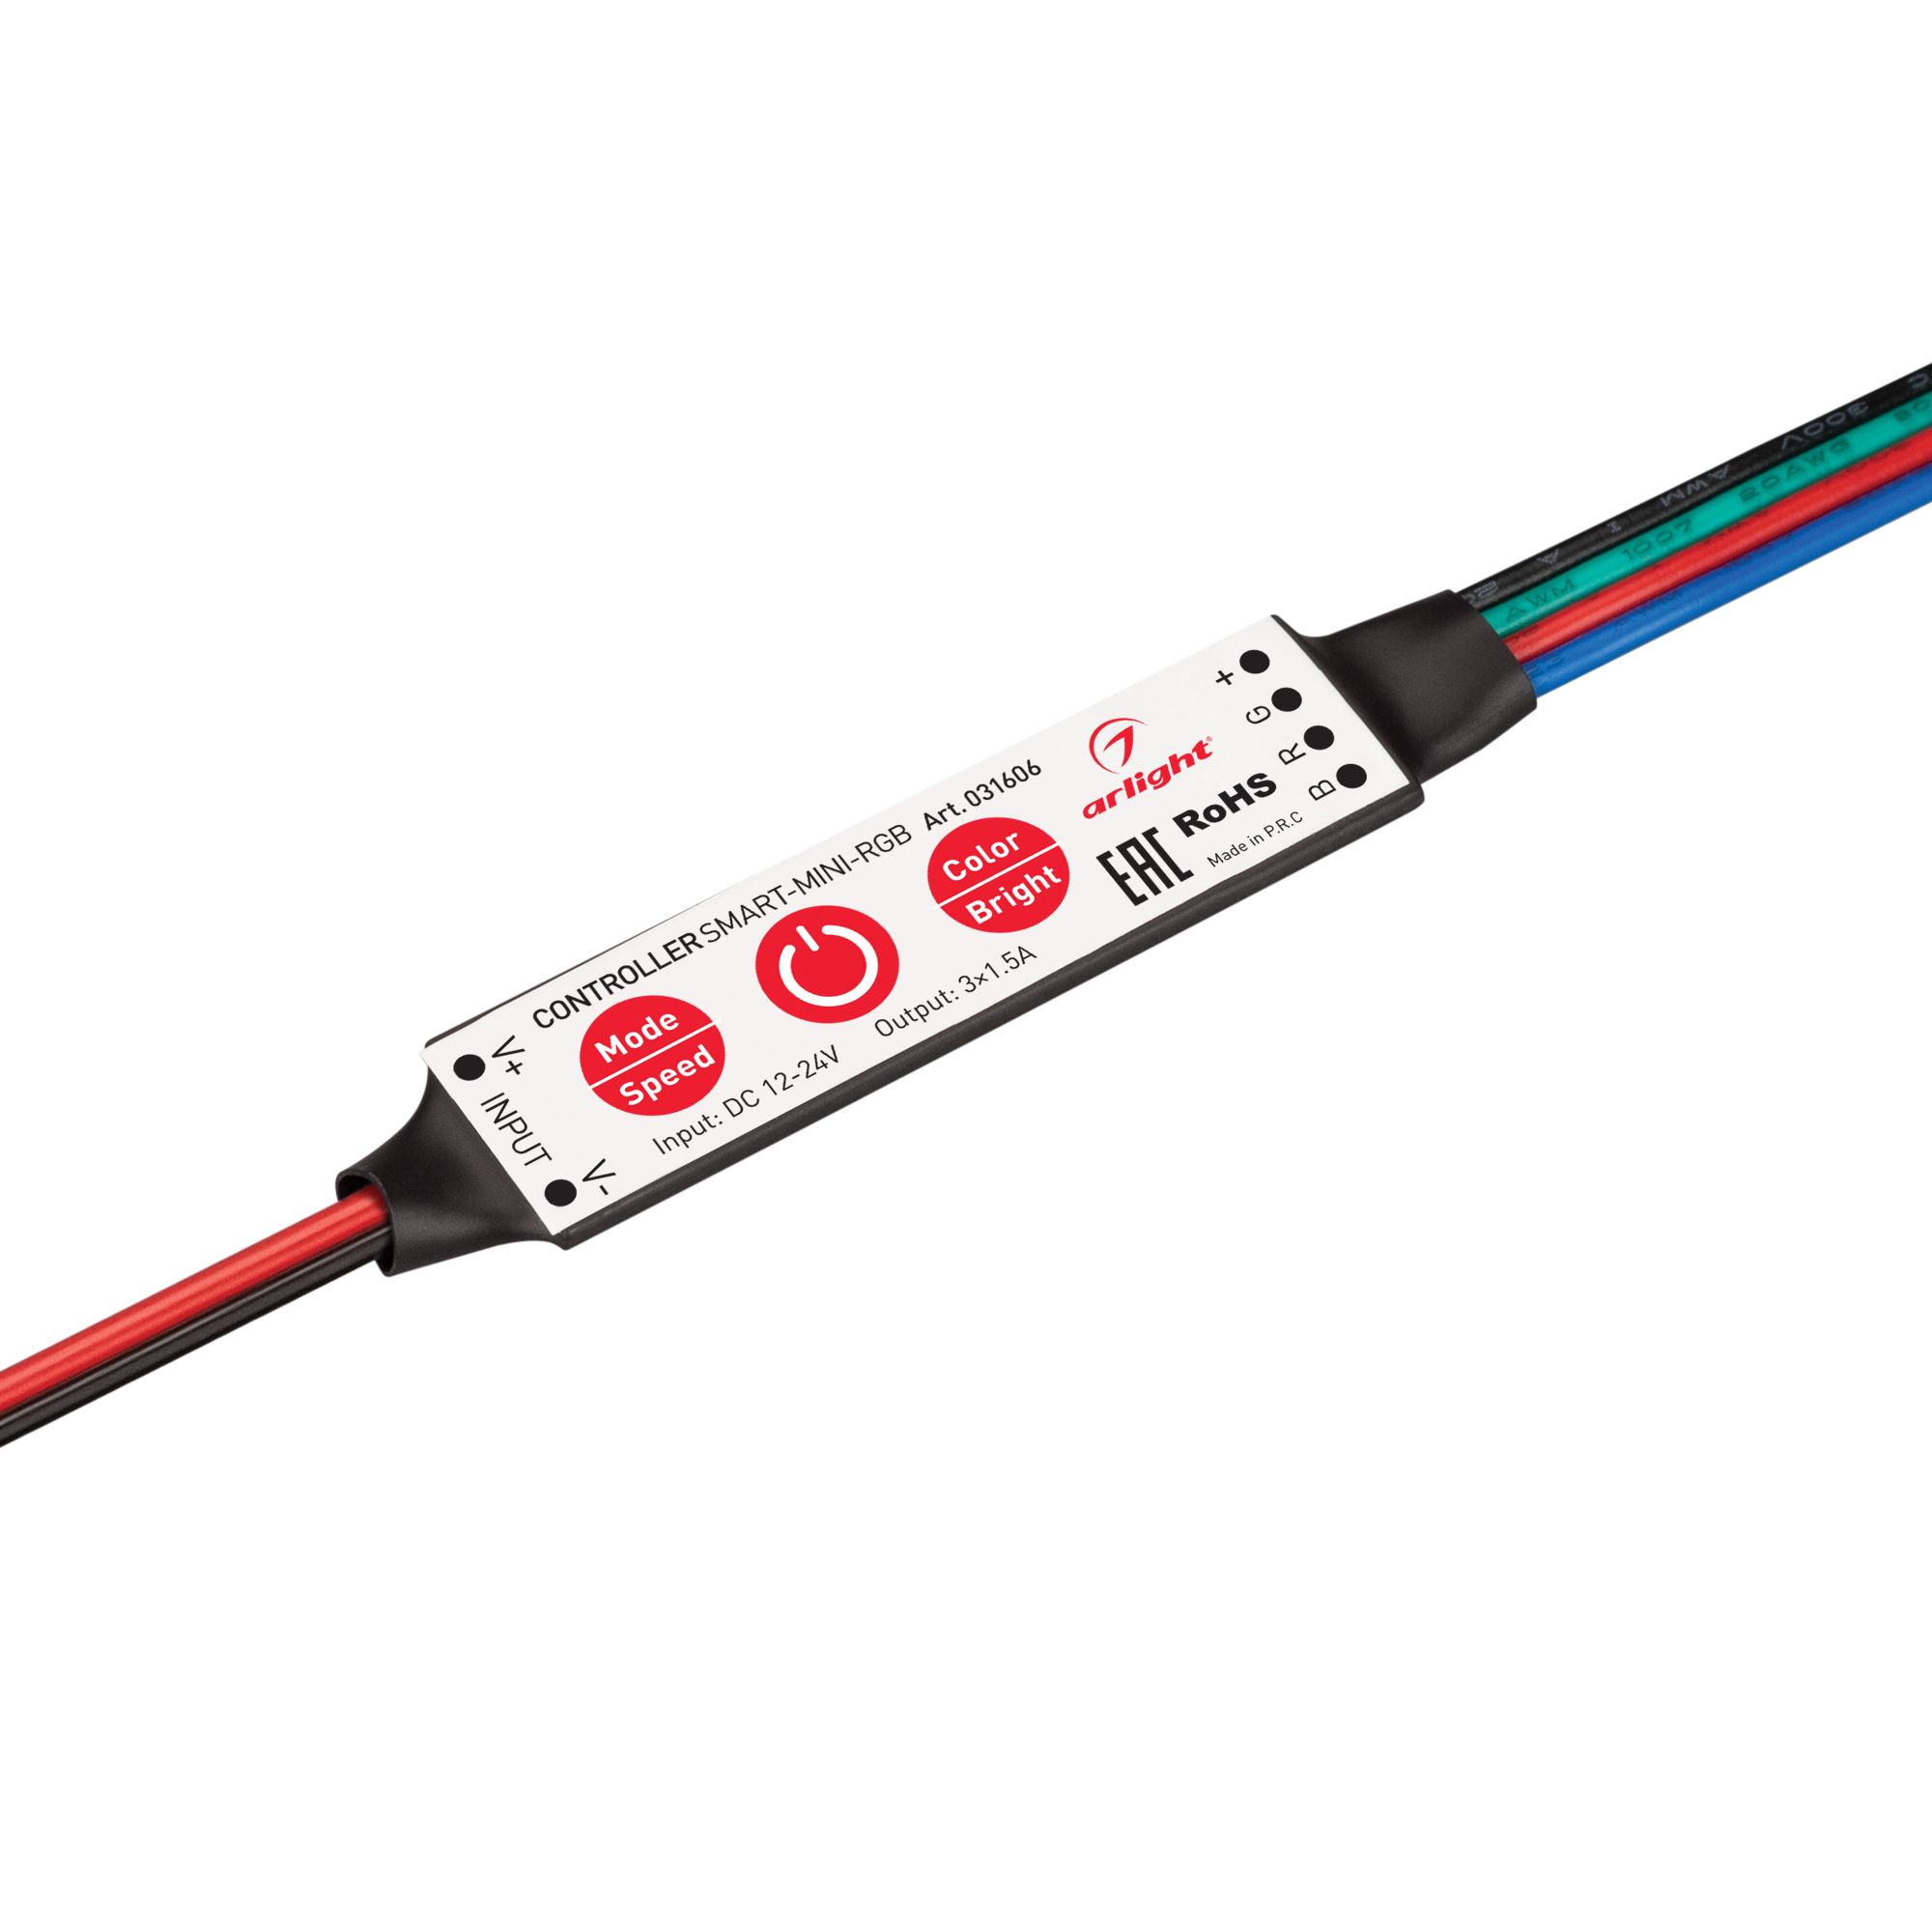 Контроллер SMART-MINI-RGB (12-24V, 3x1.5A) (Arlight, IP20 Пластик, 5 лет) искусственная кожа магнитные smart покрытия защитные случае стенд для ipad mini wake up спать ультратонких красный